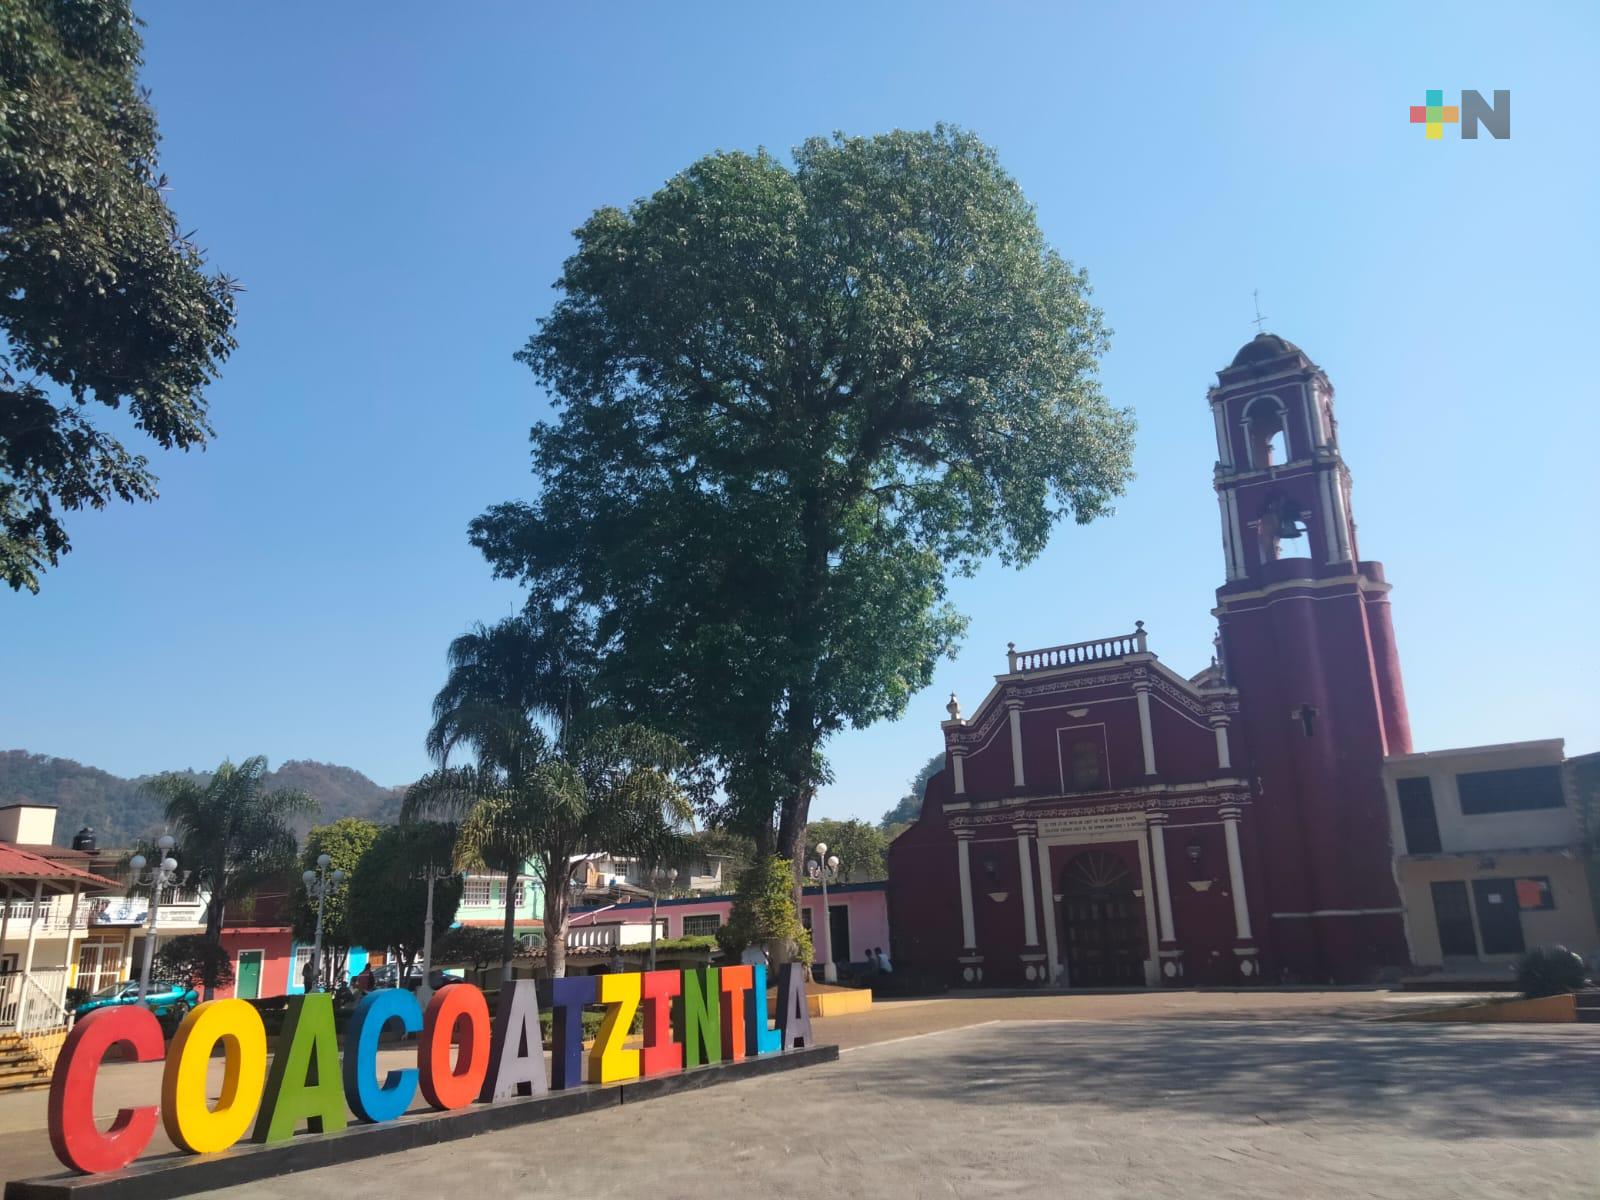 Coacoatzintla ofrece atractivos turísticos y gastronómicos